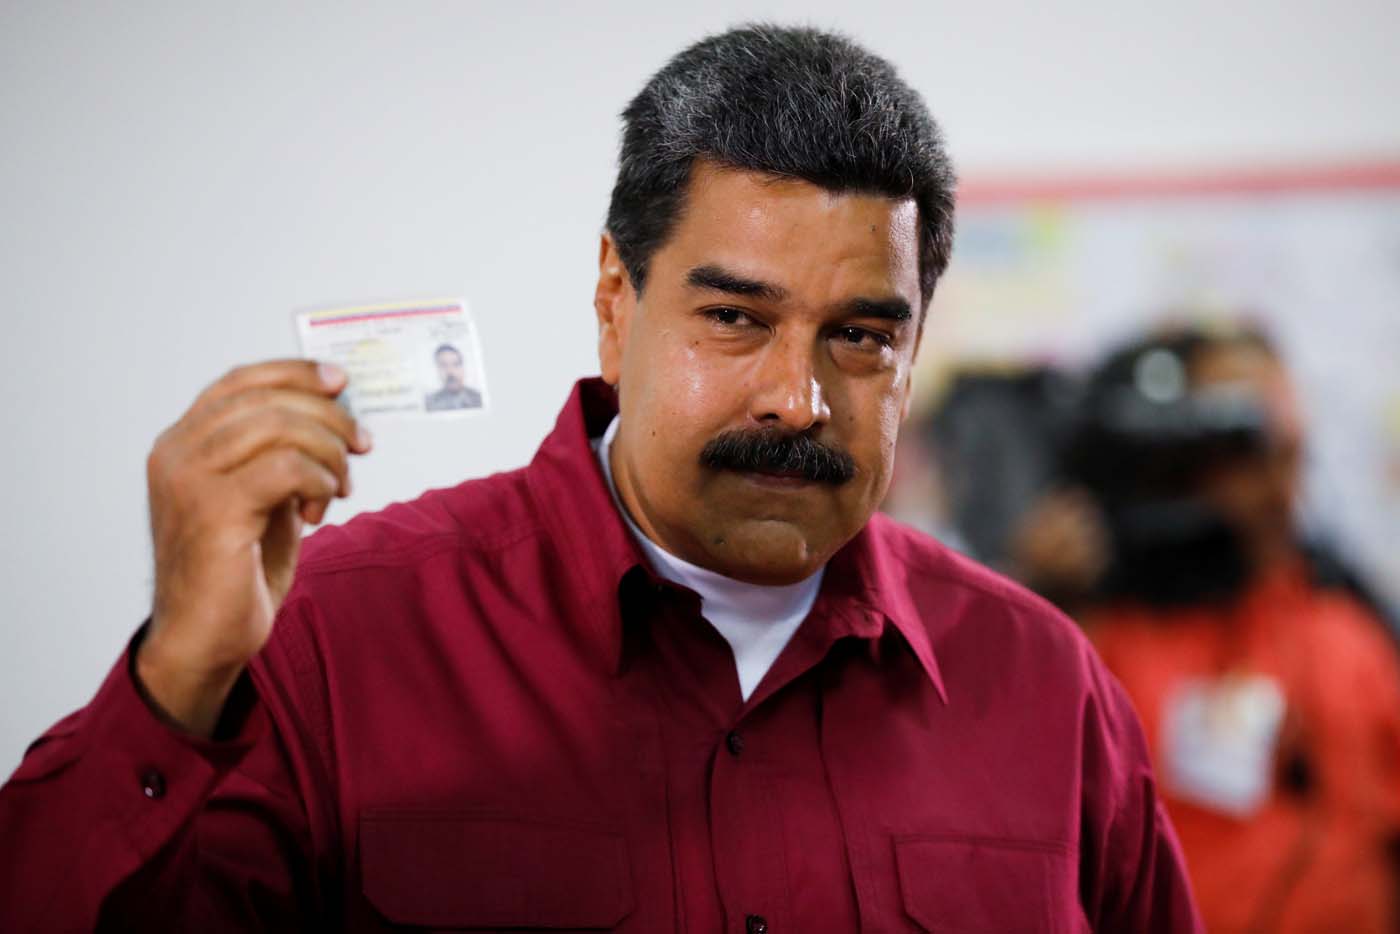 Un Maduro de cartón apareció junto a Chávez para “invitar” a la gente a votar #20May (FOTOS)